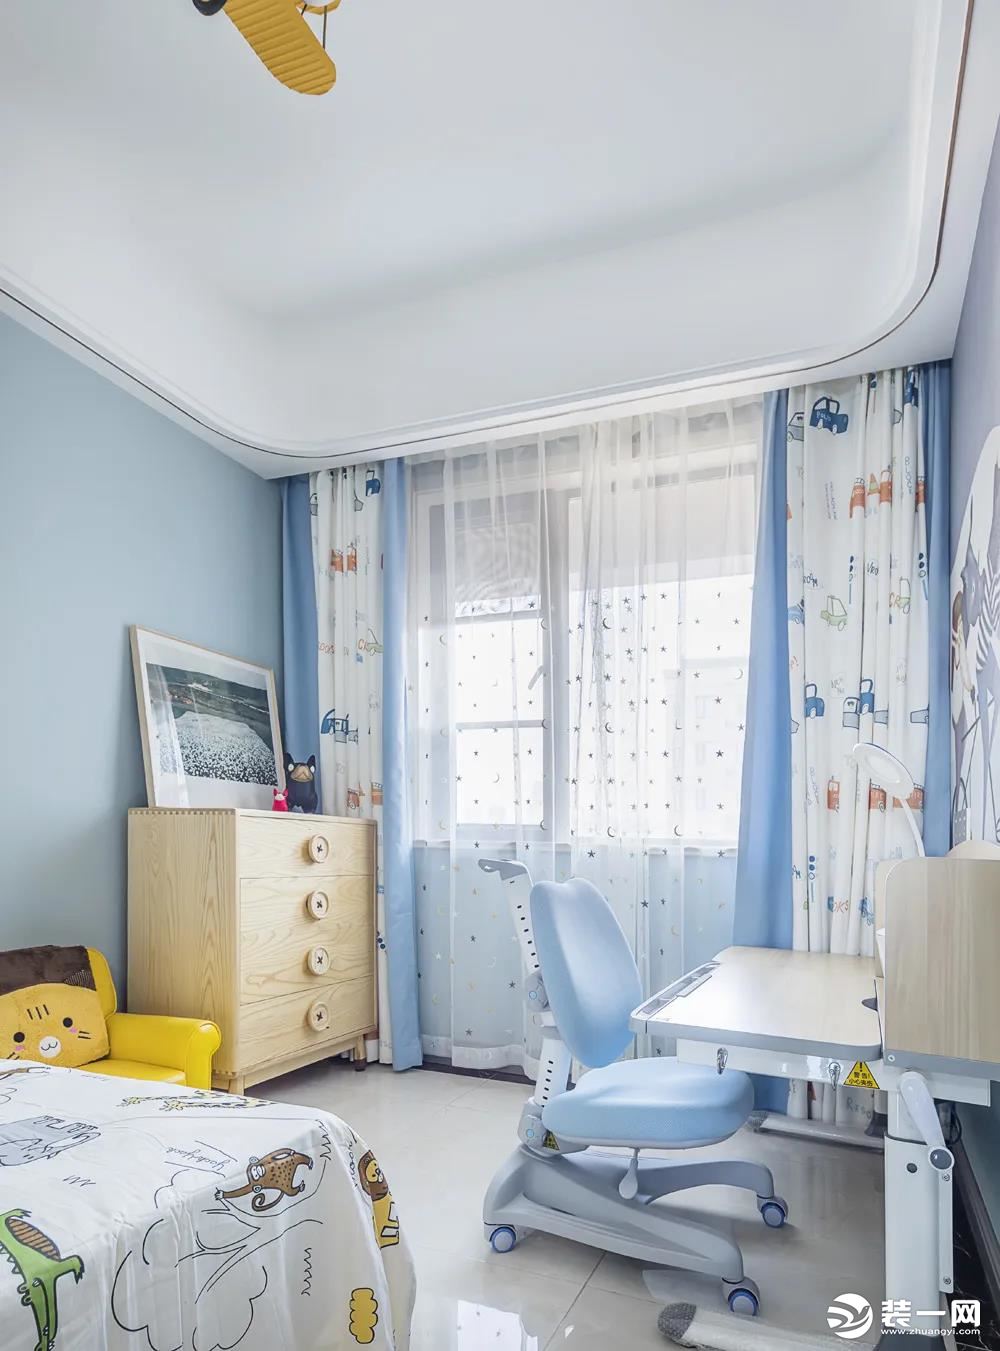 儿童房空间以淡蓝色的空间，结合童趣的图案与儿童家具布置，营造出一种充满轻松活泼的惬意感。